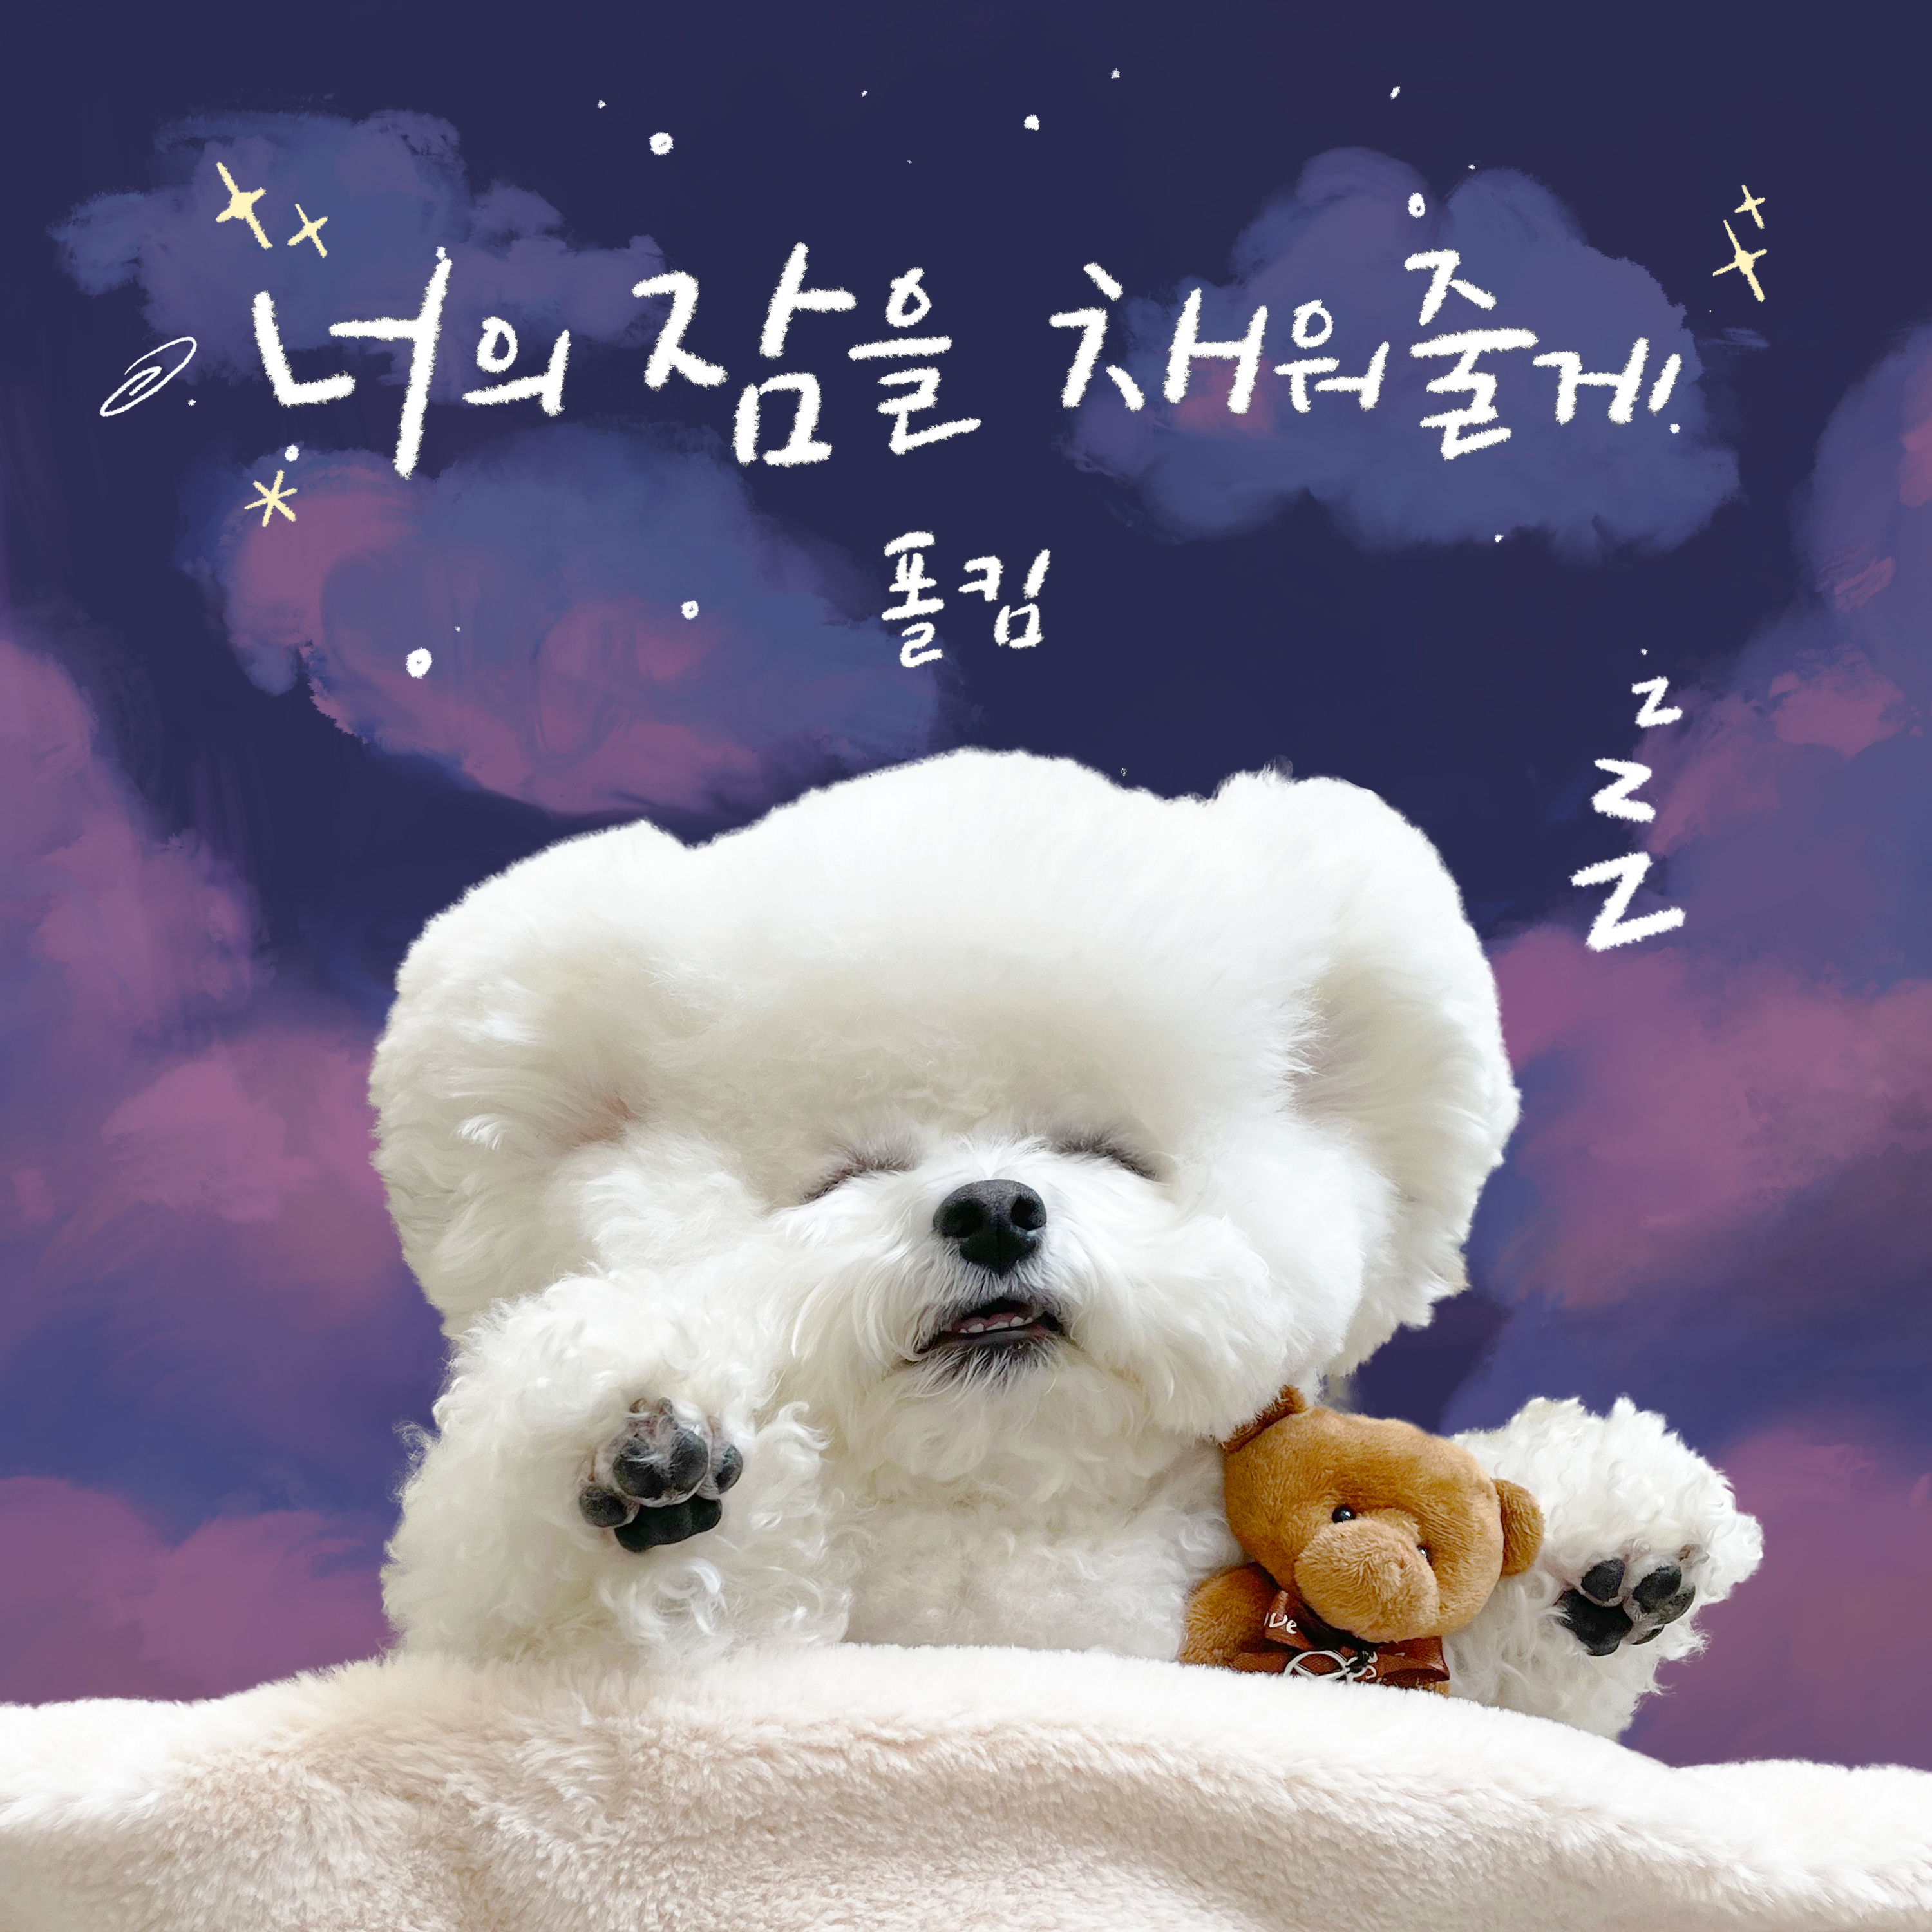 [影音] Paul Kim - Sweet Lullaby